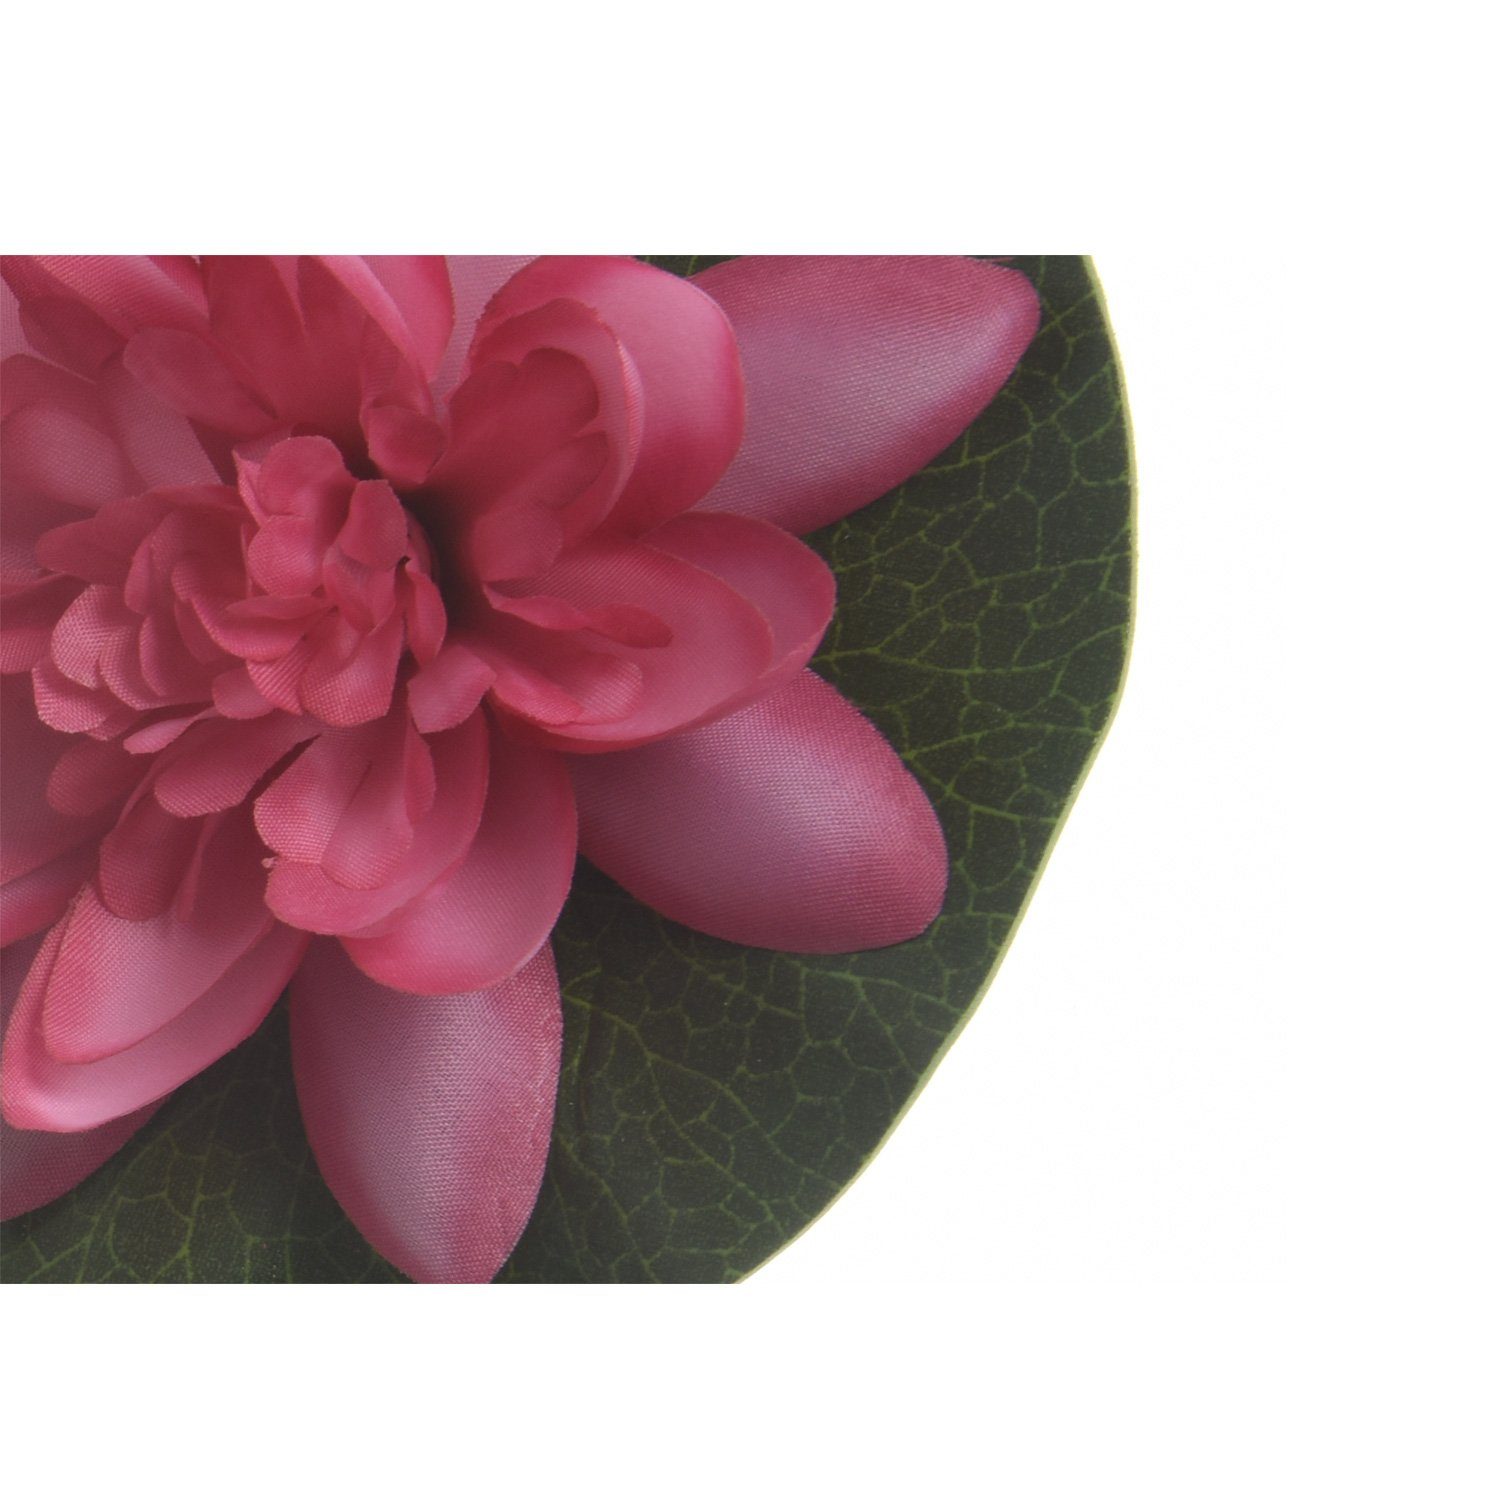 Lotusblume 4 Kunstblume Lotusblüte Höhe 13cm schwimmend, Teichblume MARELIDA, Seerose cm D: Kunstblume